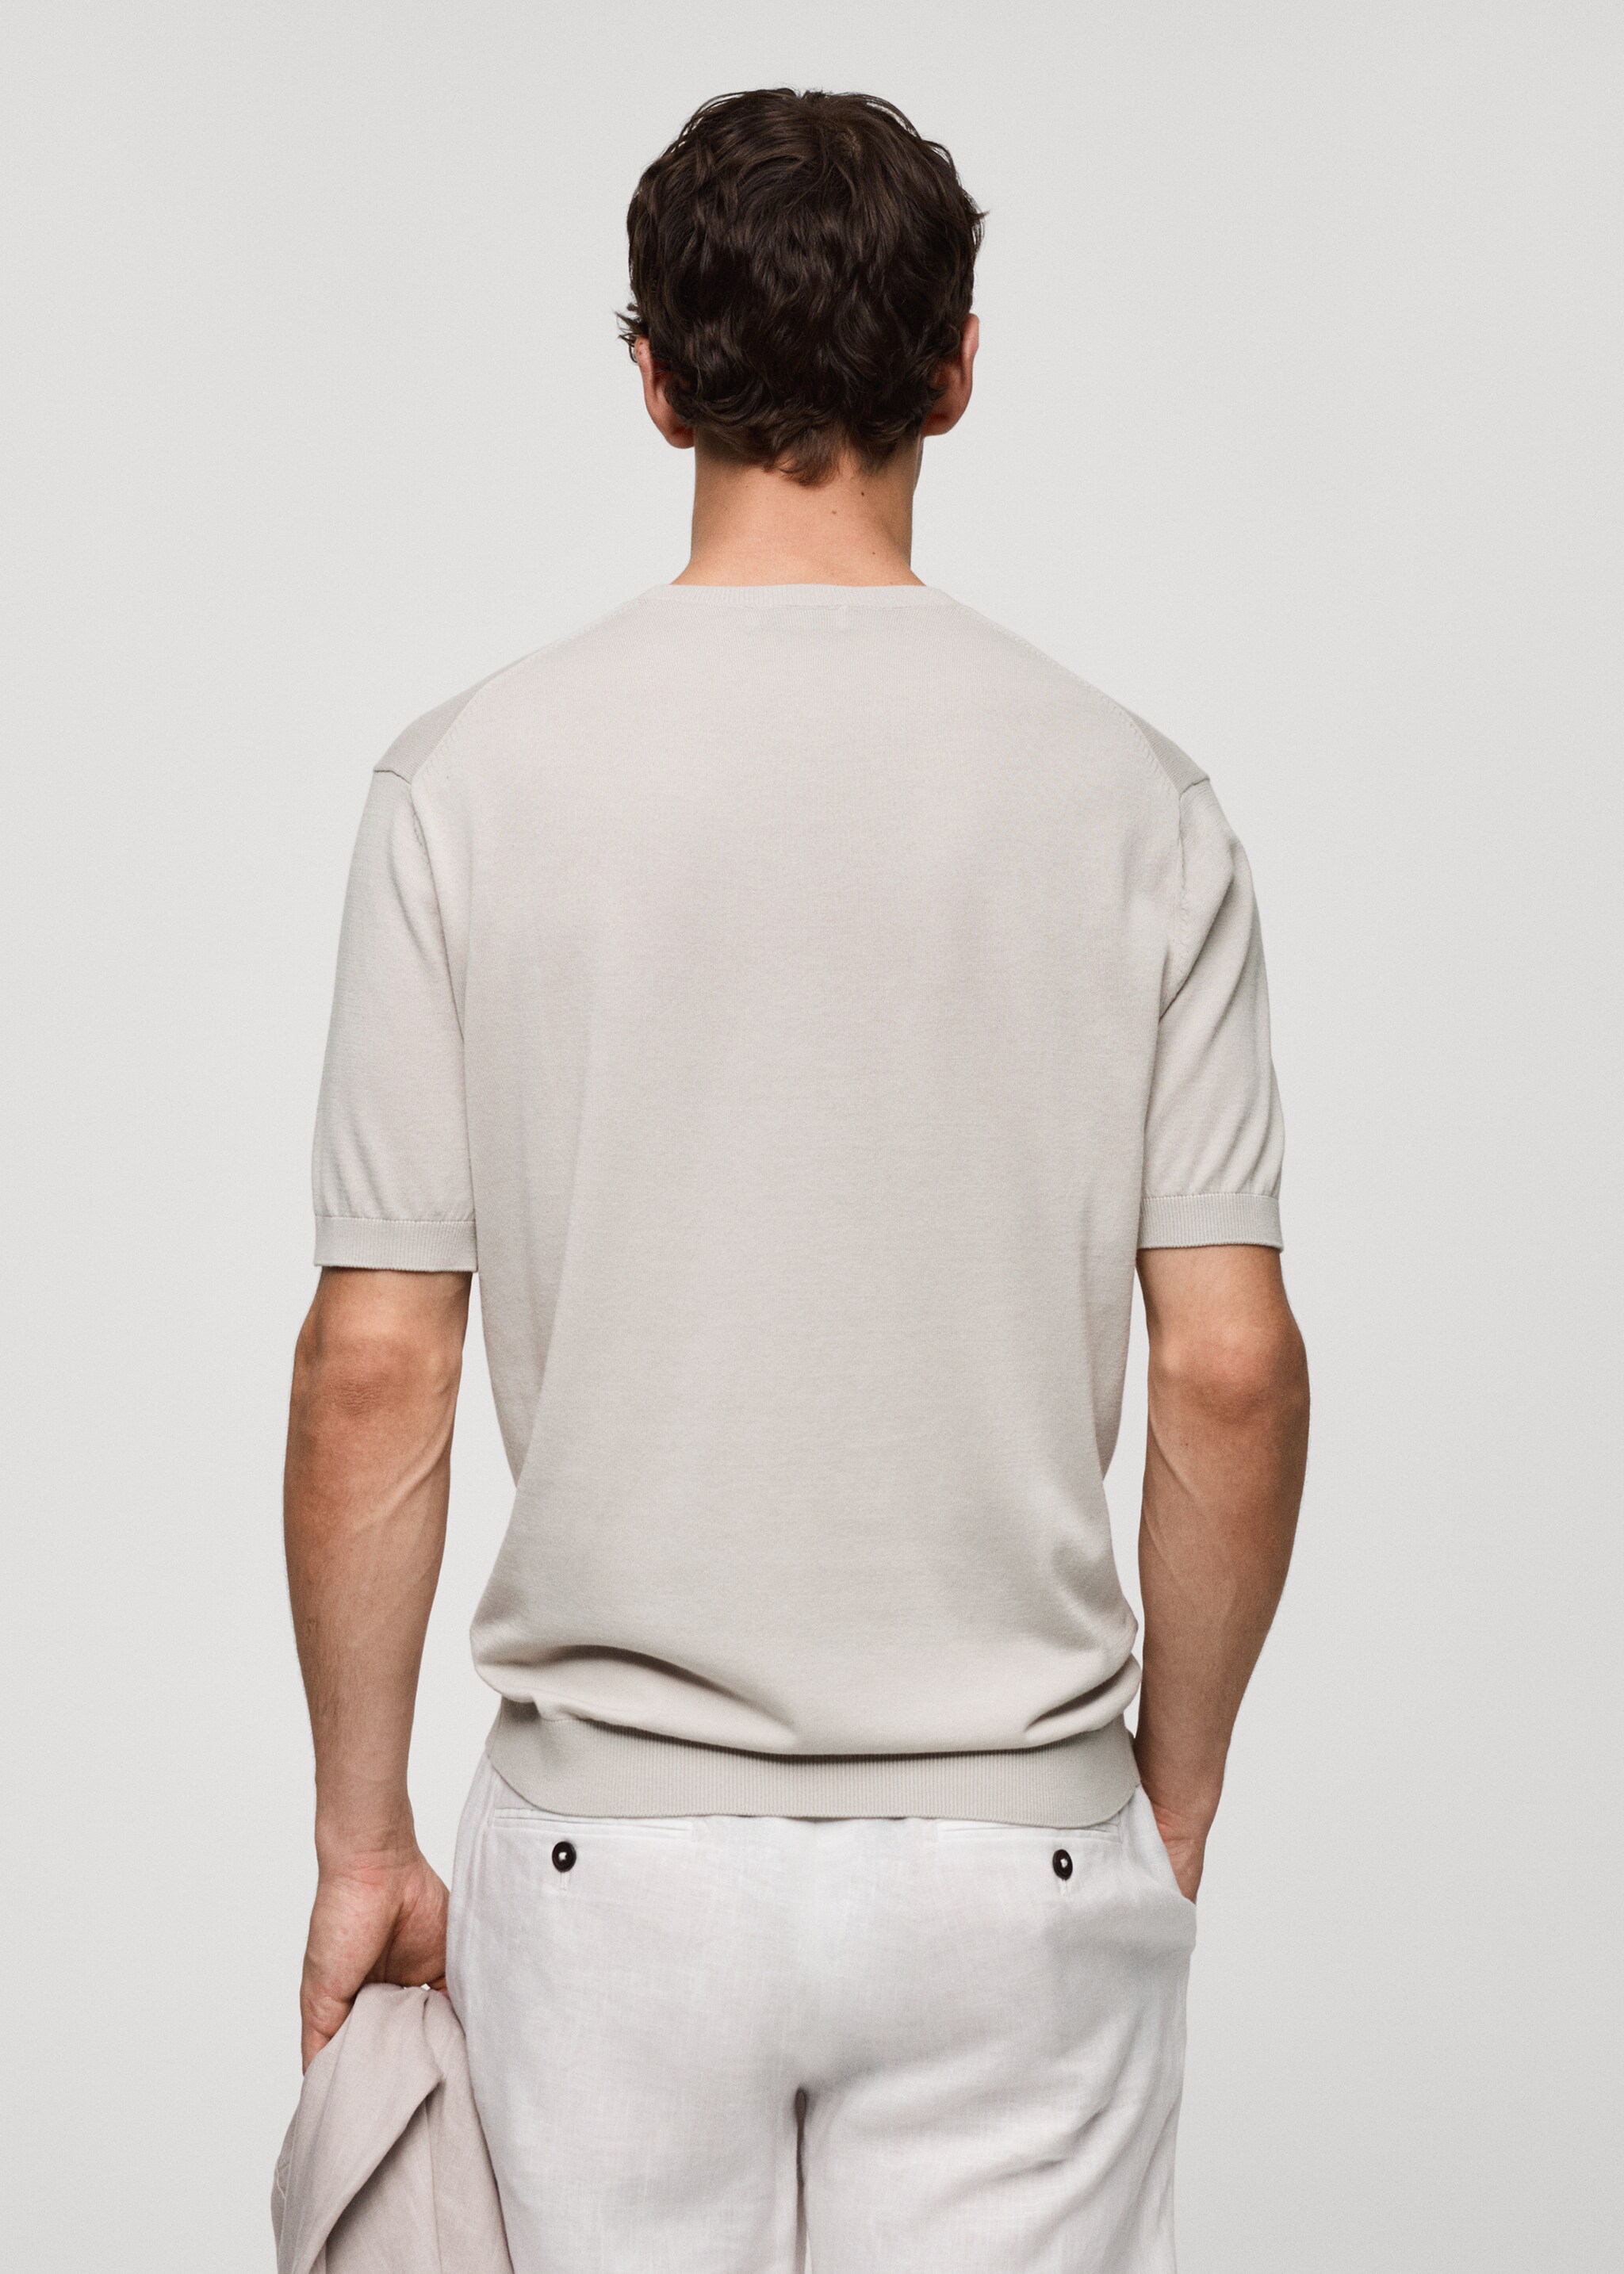 Strick-T-Shirt aus 100 % Baumwolle - Rückseite des Artikels